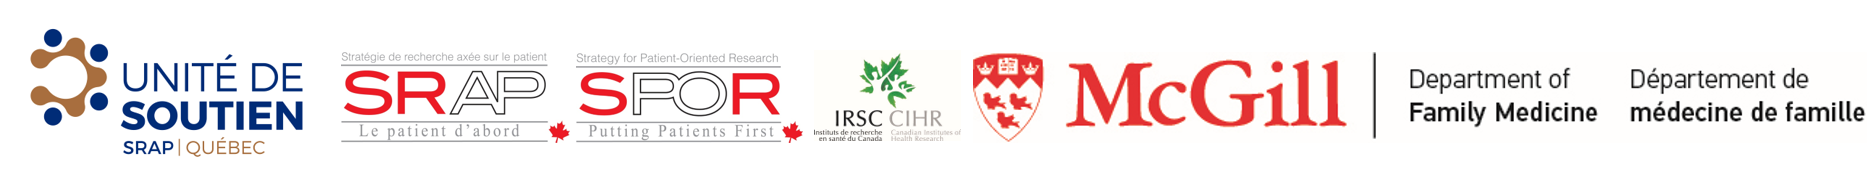 logos de Unité de soutien, SRAP, SPOR, IRSC, CIHR, McGill département de médecine de famille, 